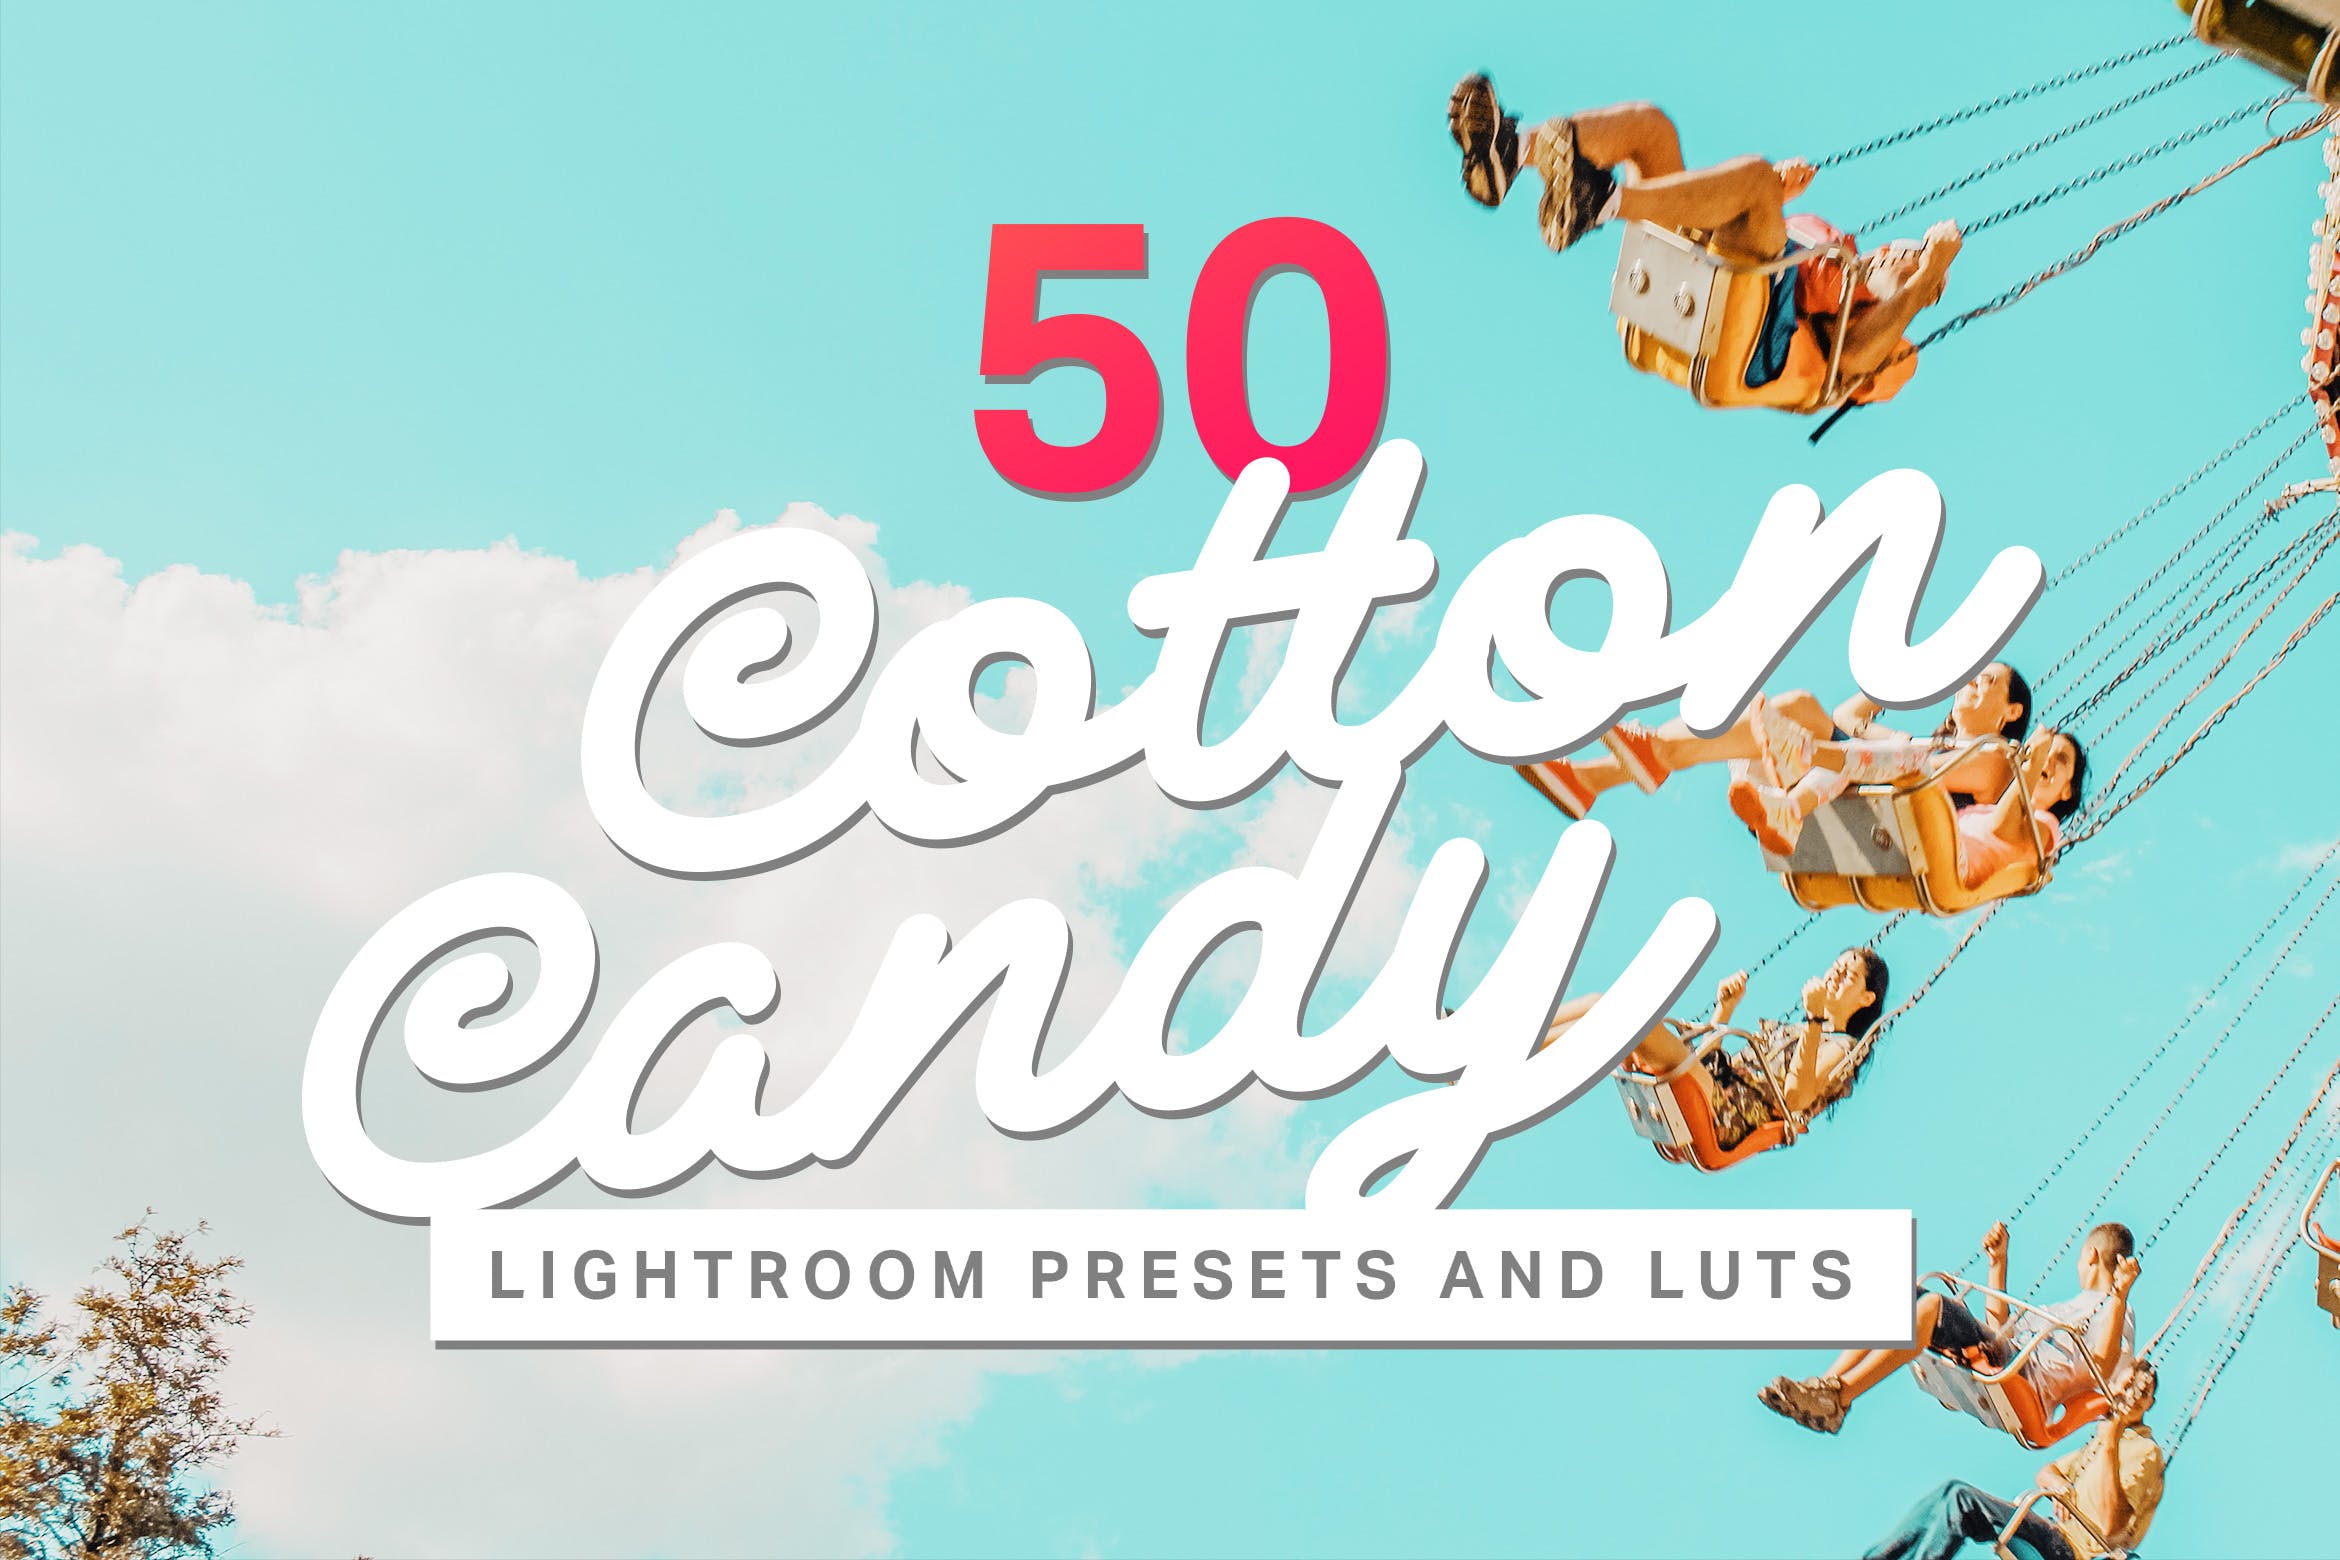 50种浪漫棉花糖柔和色照片调色处理LR预设 50 Cotton Candy Lightroom Presets and LUTs插图